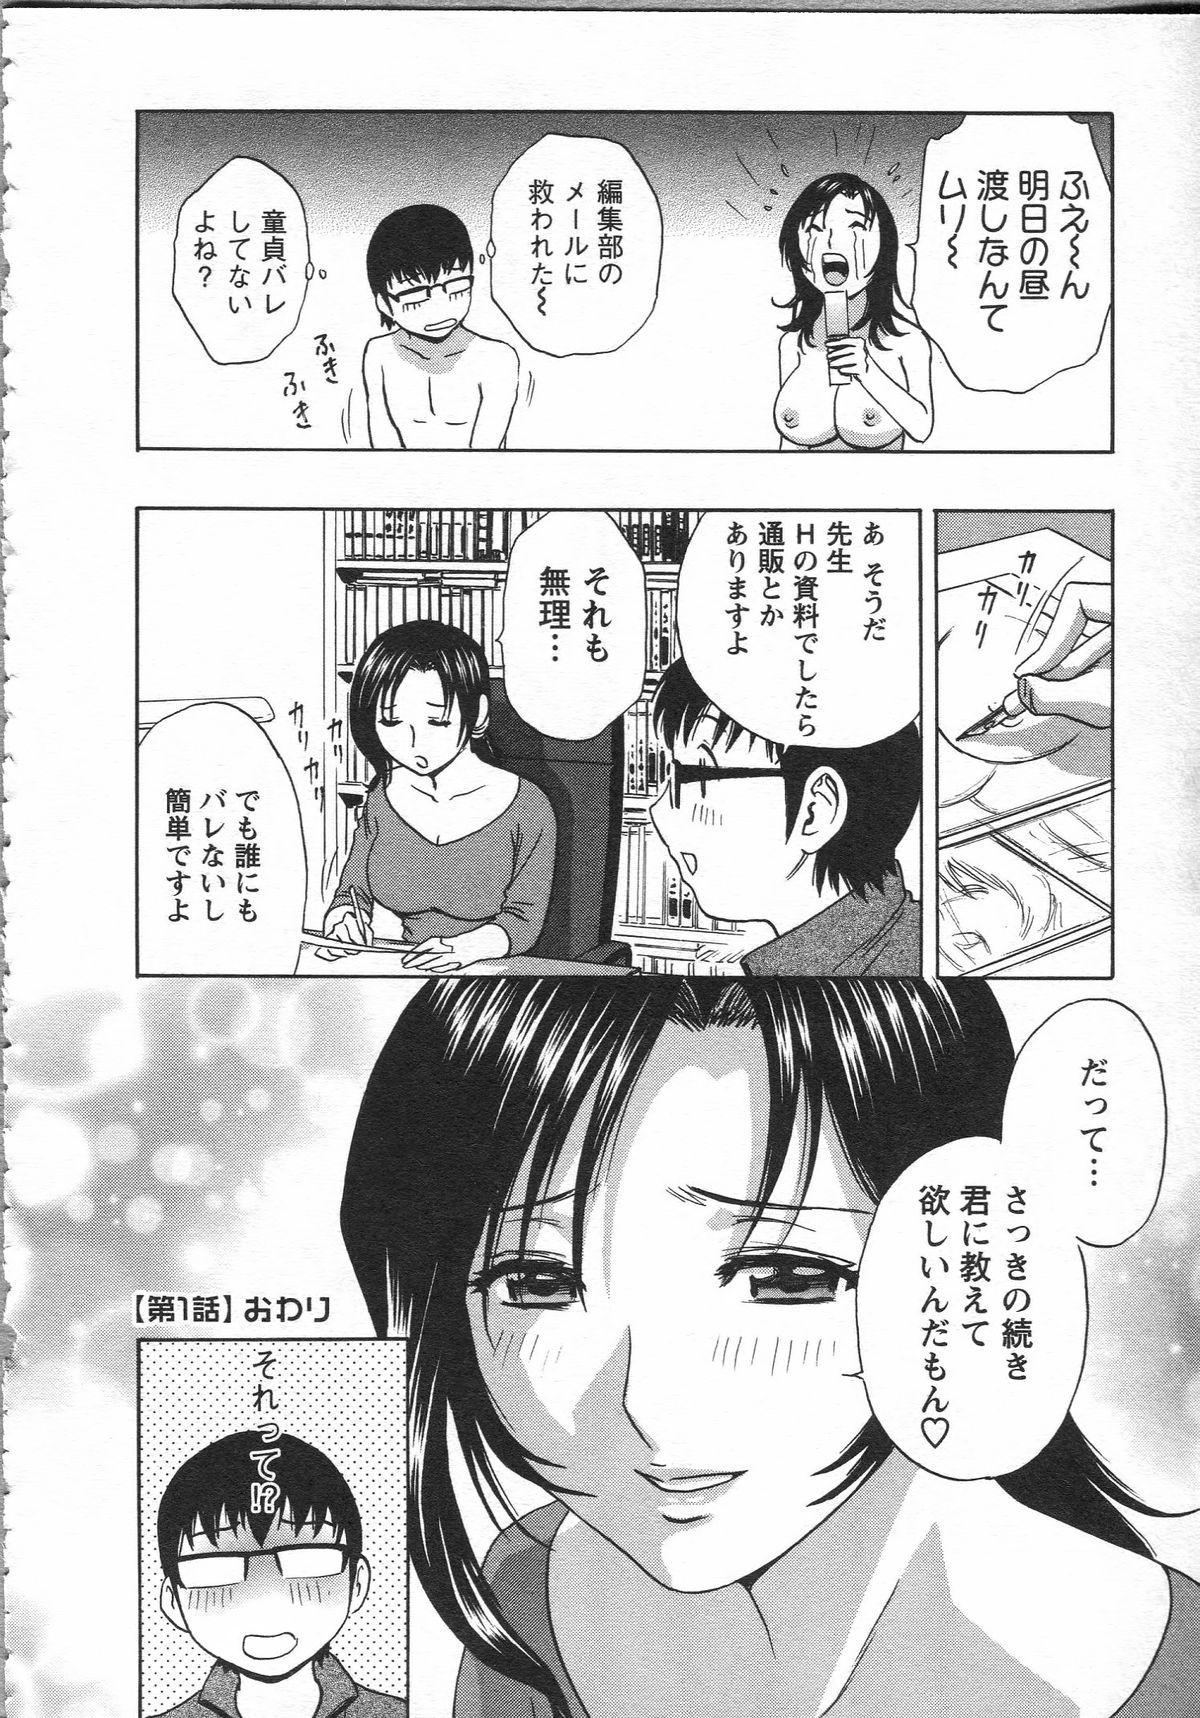 Manga no youna Hitozuma to no Hibi - Days with Married Women such as Comics. 23